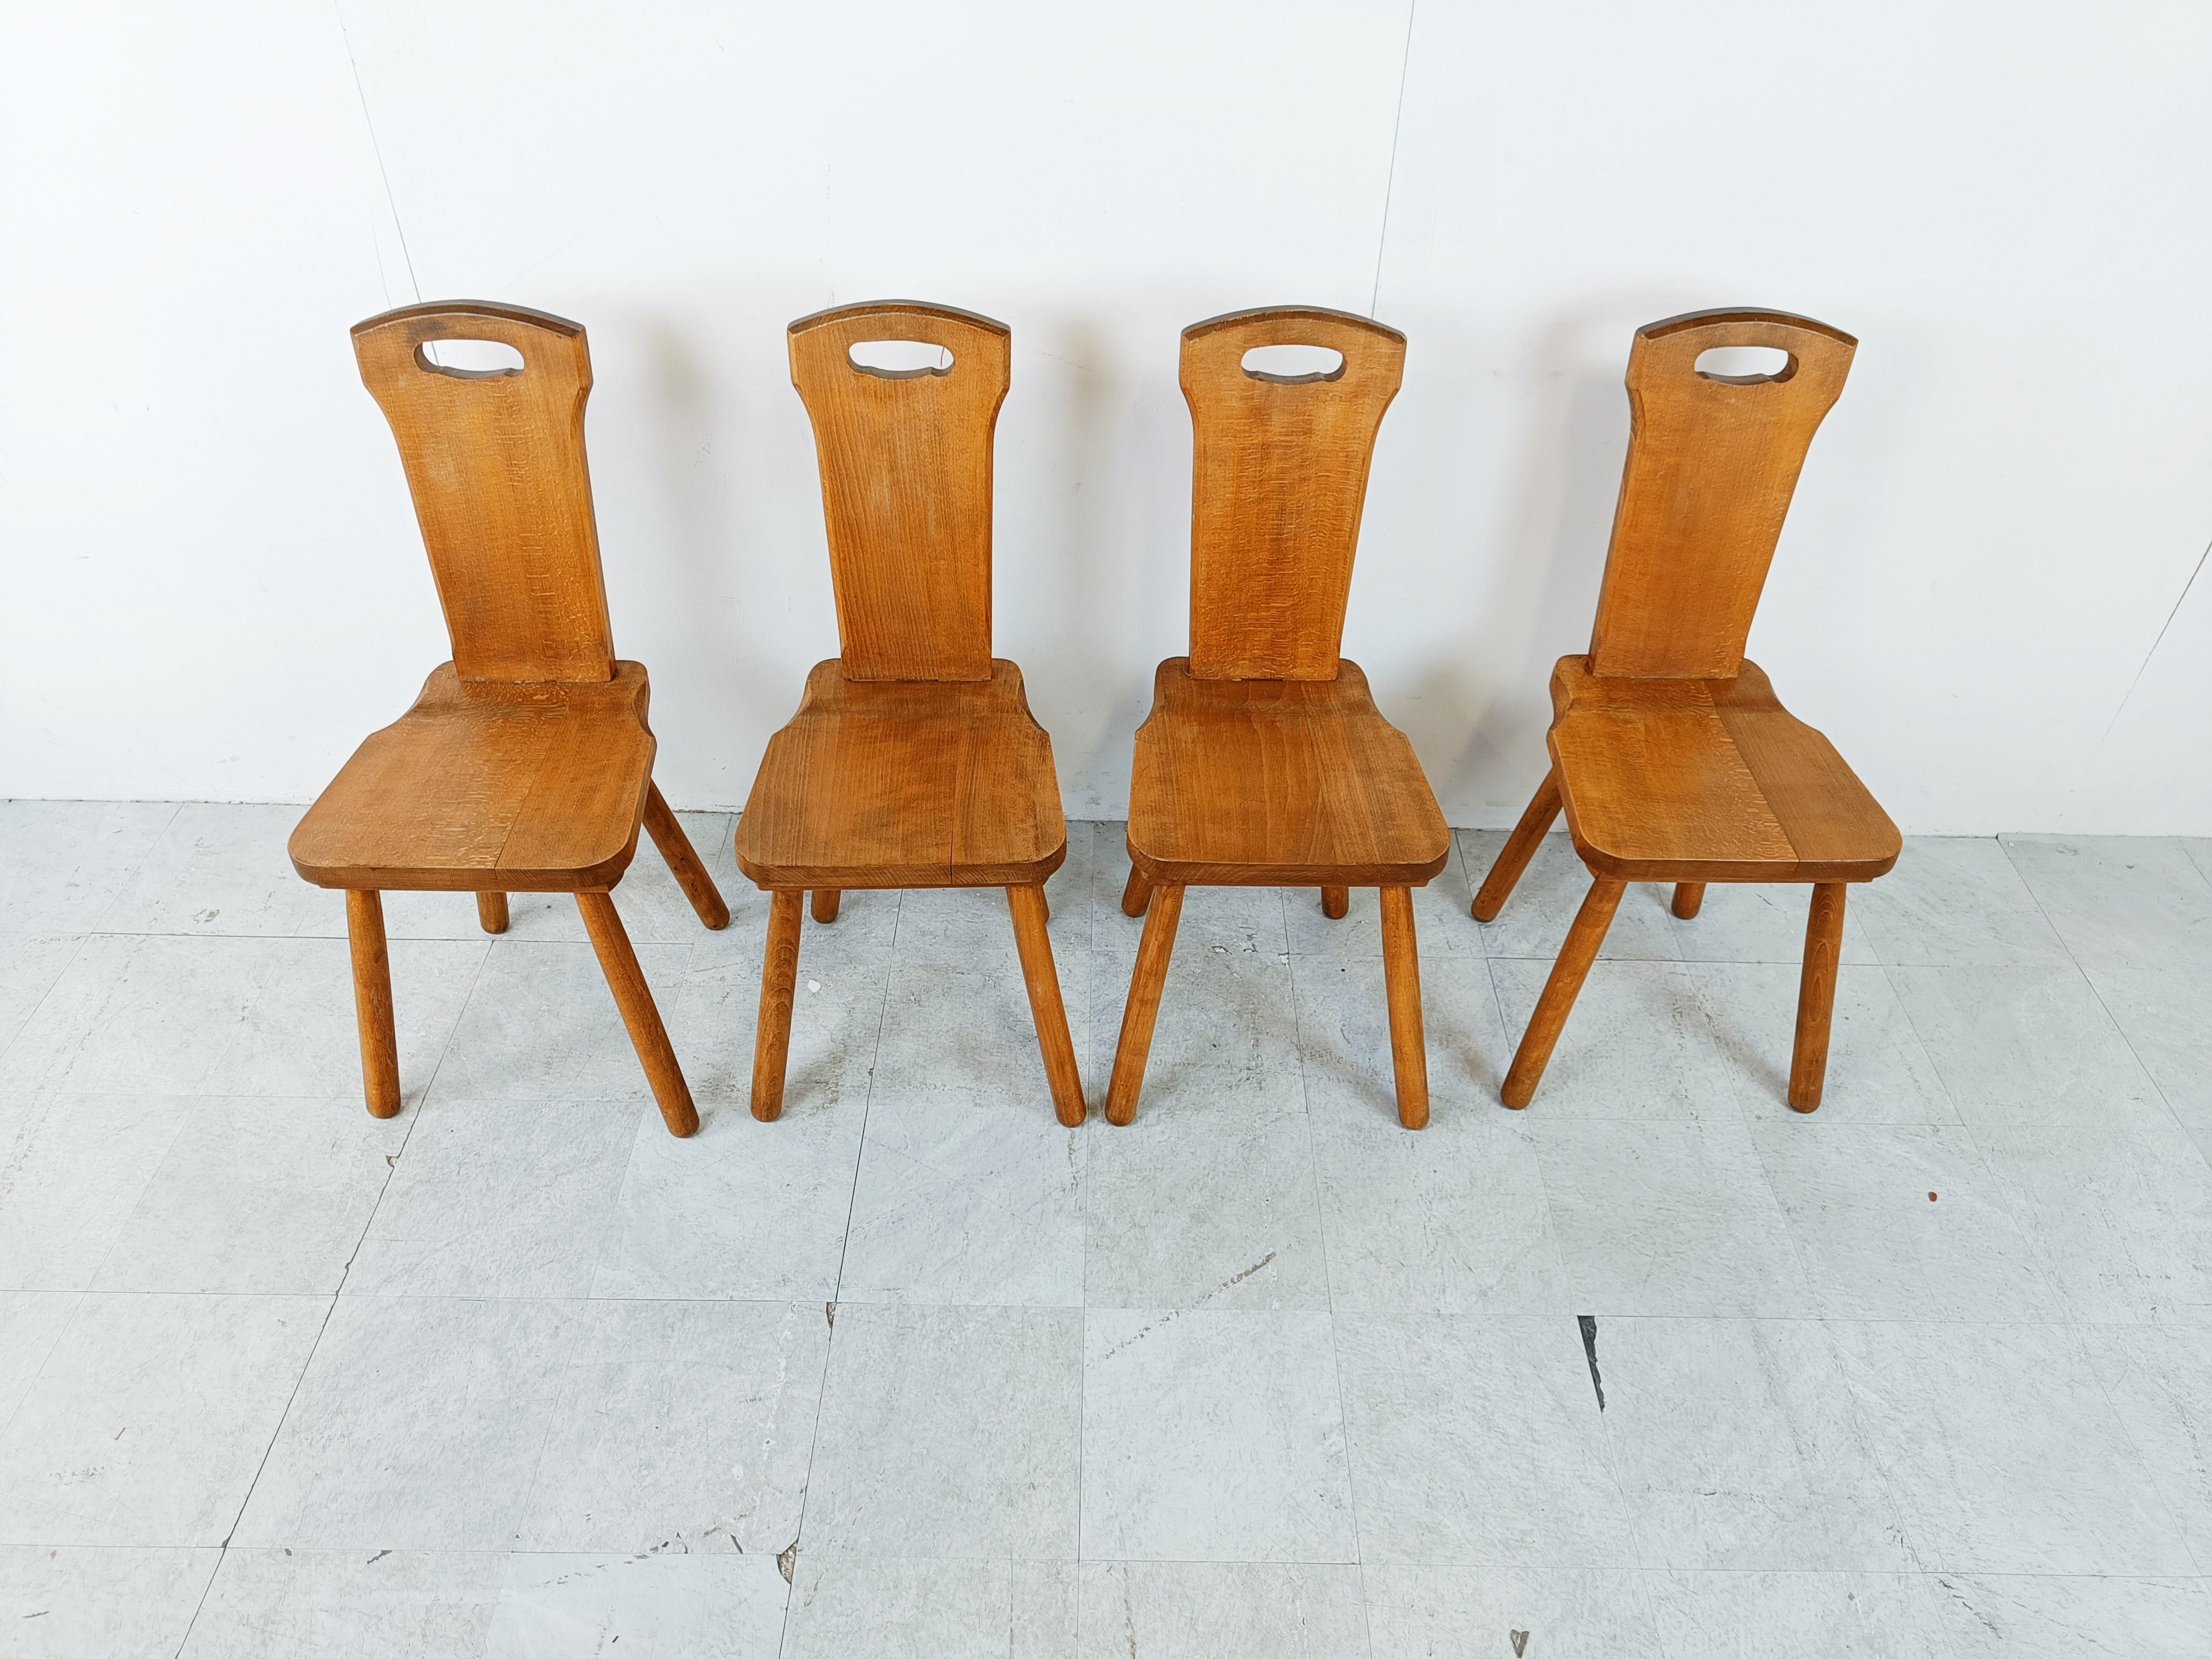 Vintage chêne massif chaises à manger suédoises

Ces chaises rustiques ont été fabriquées à la main.

Bon état avec usure normale liée à l'âge.

Années 1960 - Suède

Dimensions :
Hauteur : 96cm/37.79